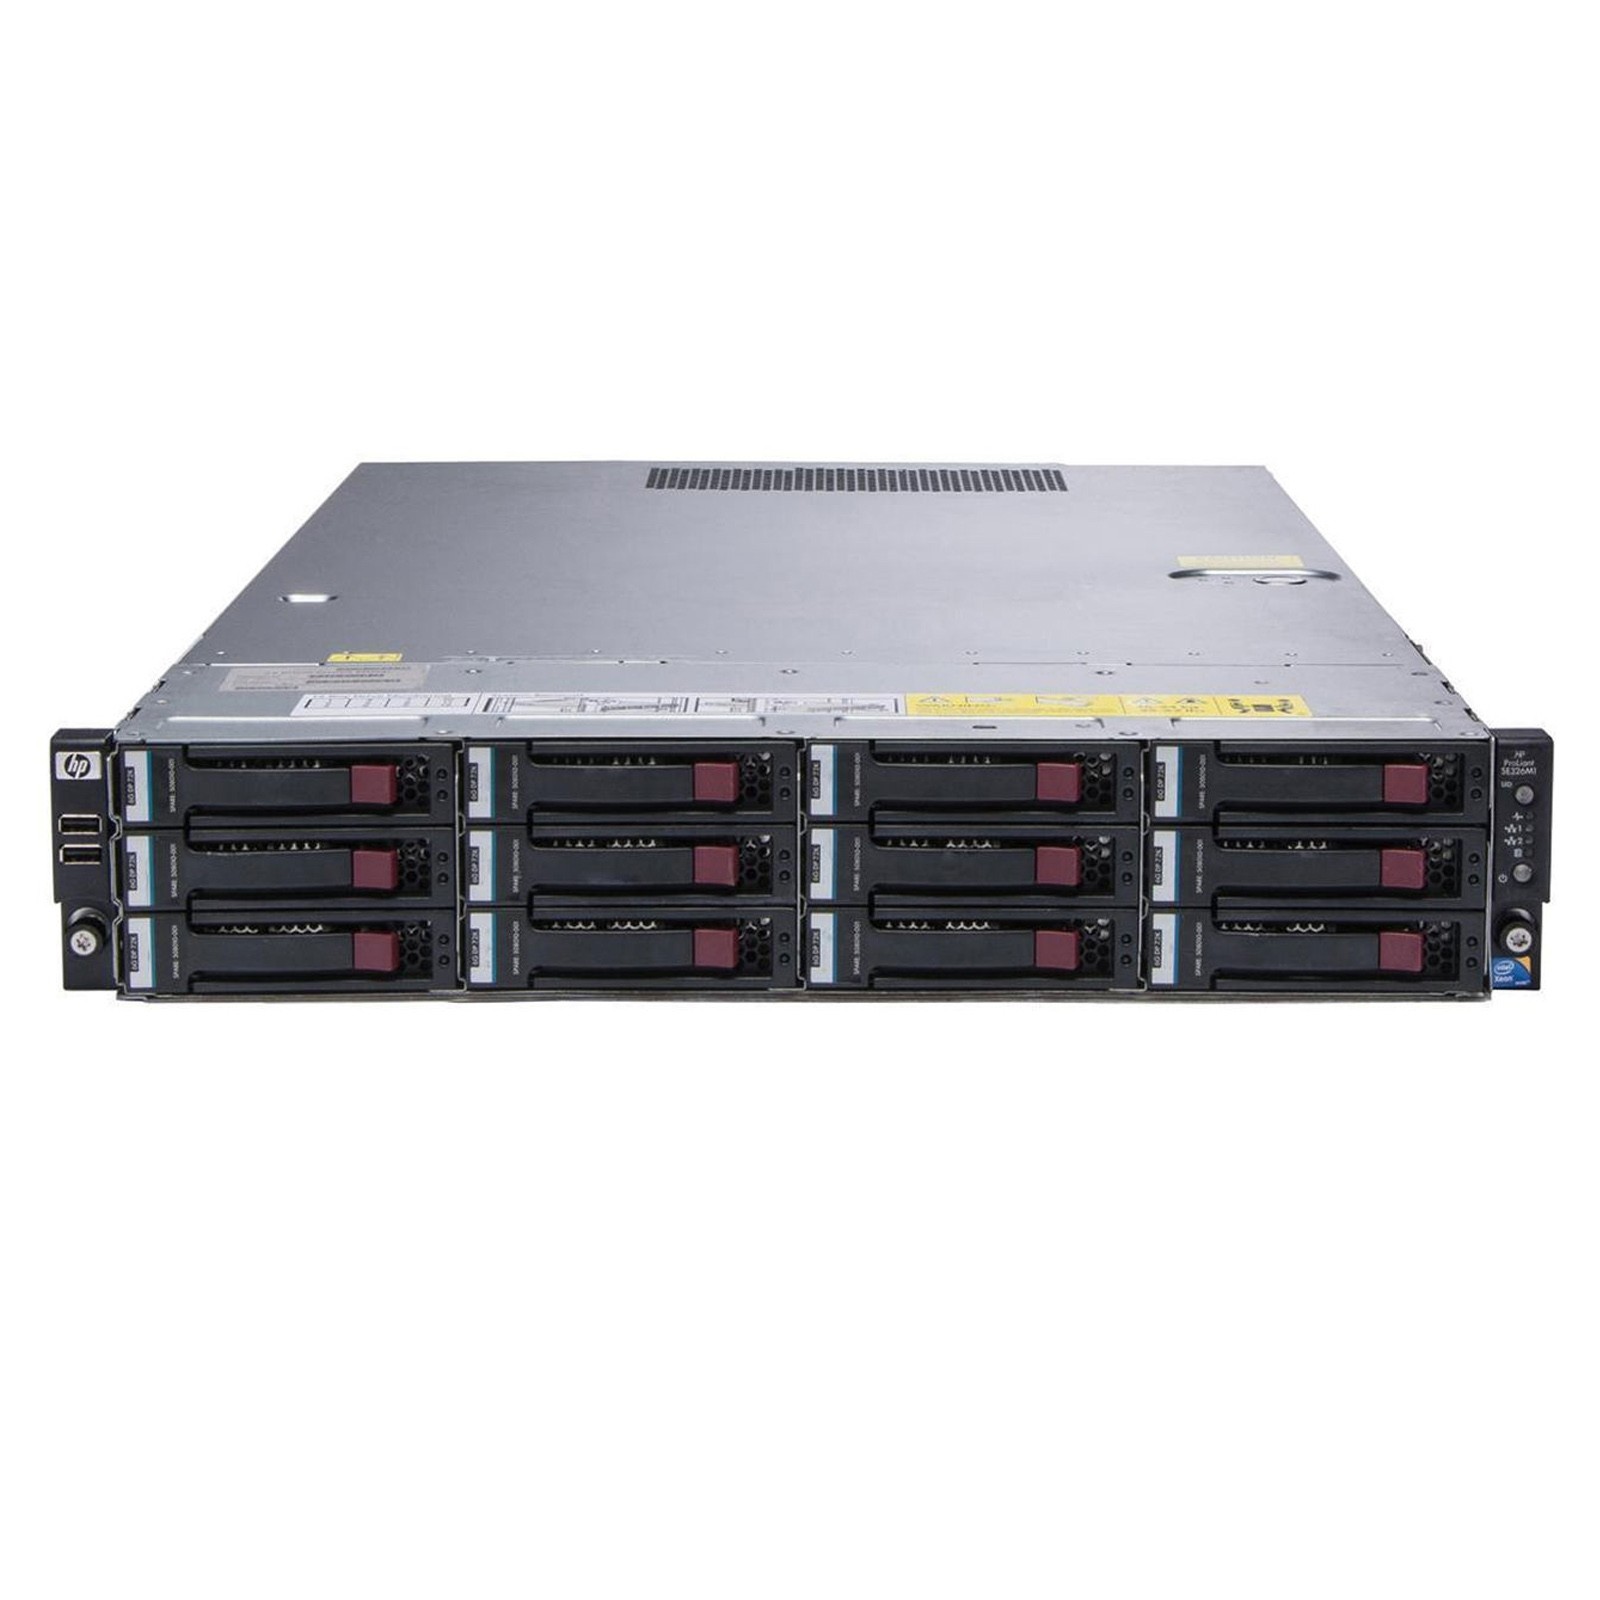 Dyrke motion Blank erklære HP ProLiant DL180 G6 12x LFF Rack Server | Configure-to-Order